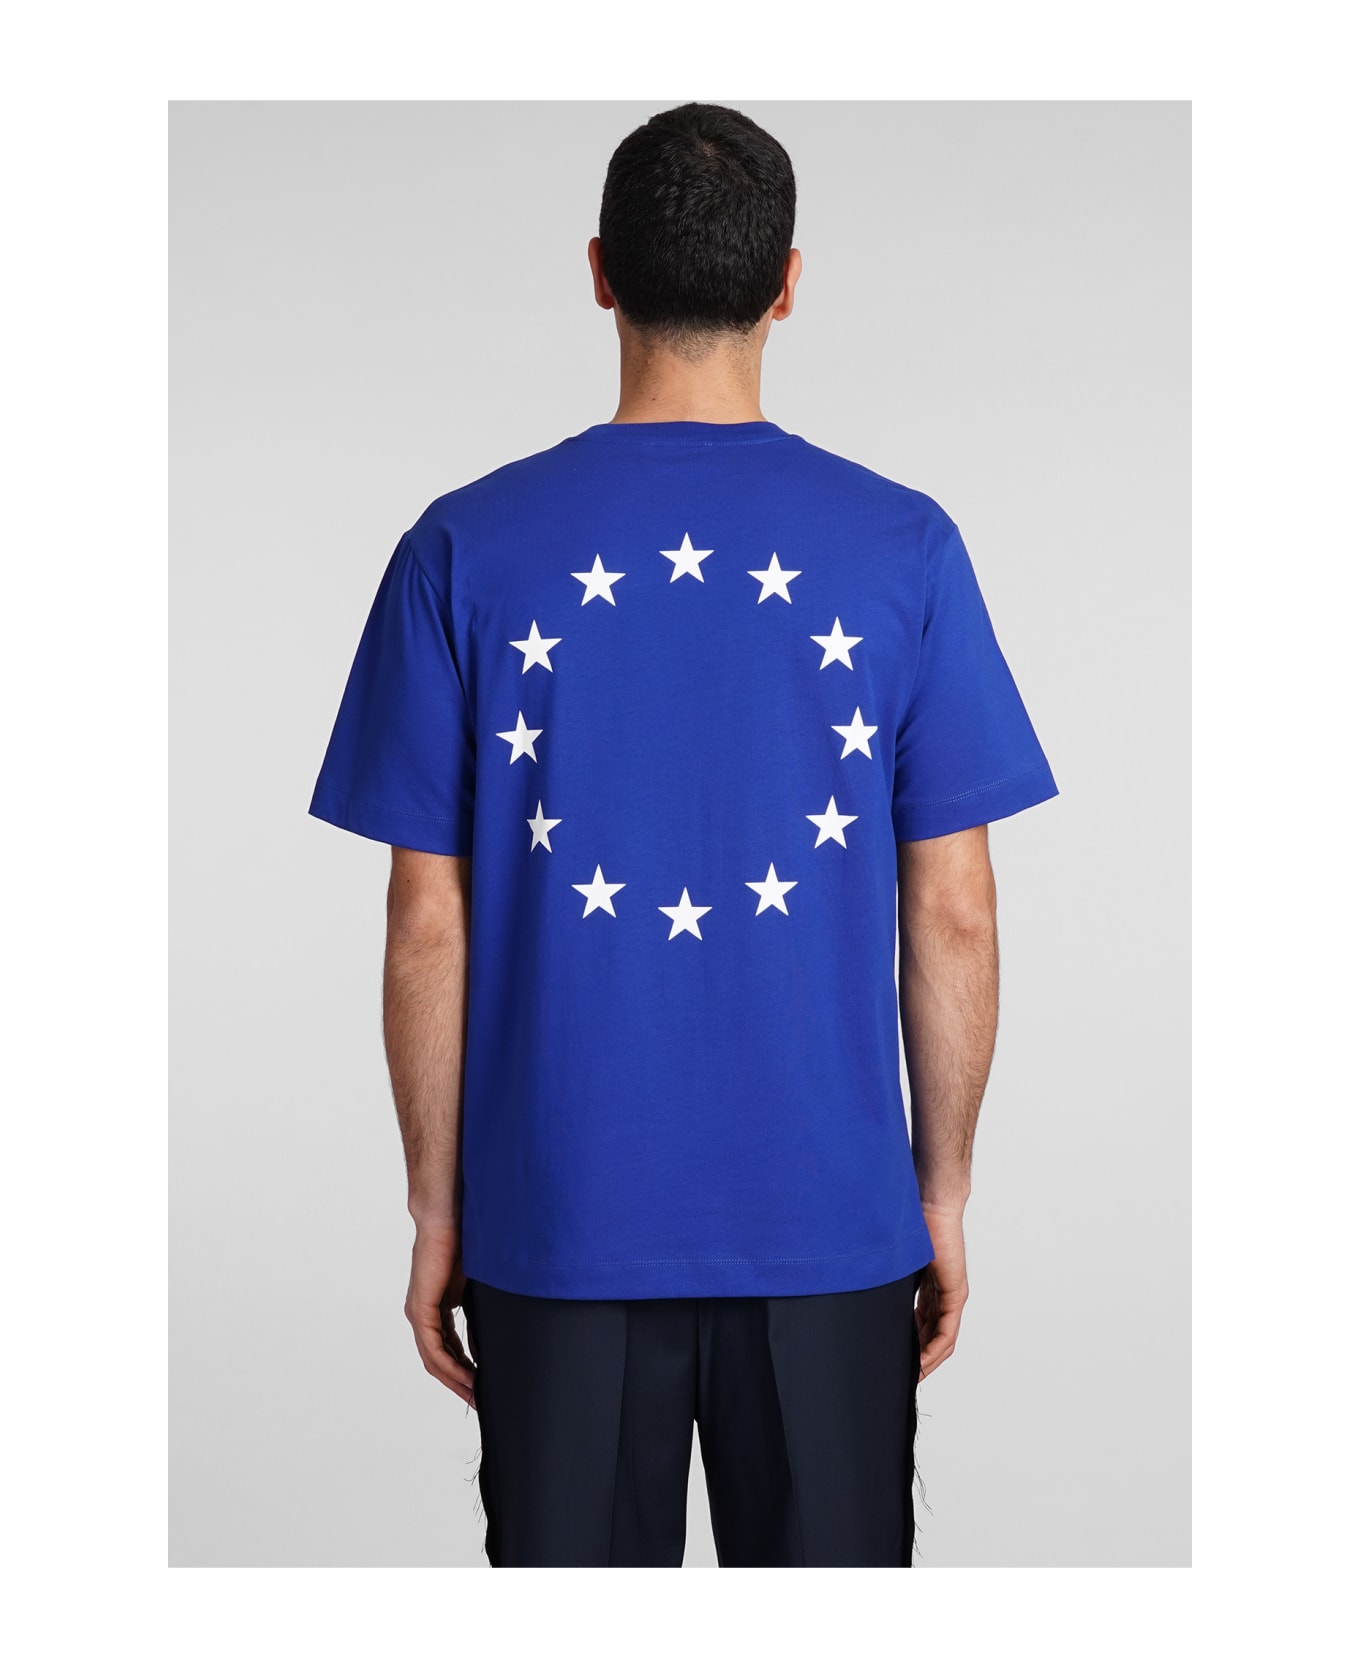 Études T-shirt In Blue Cotton - blue